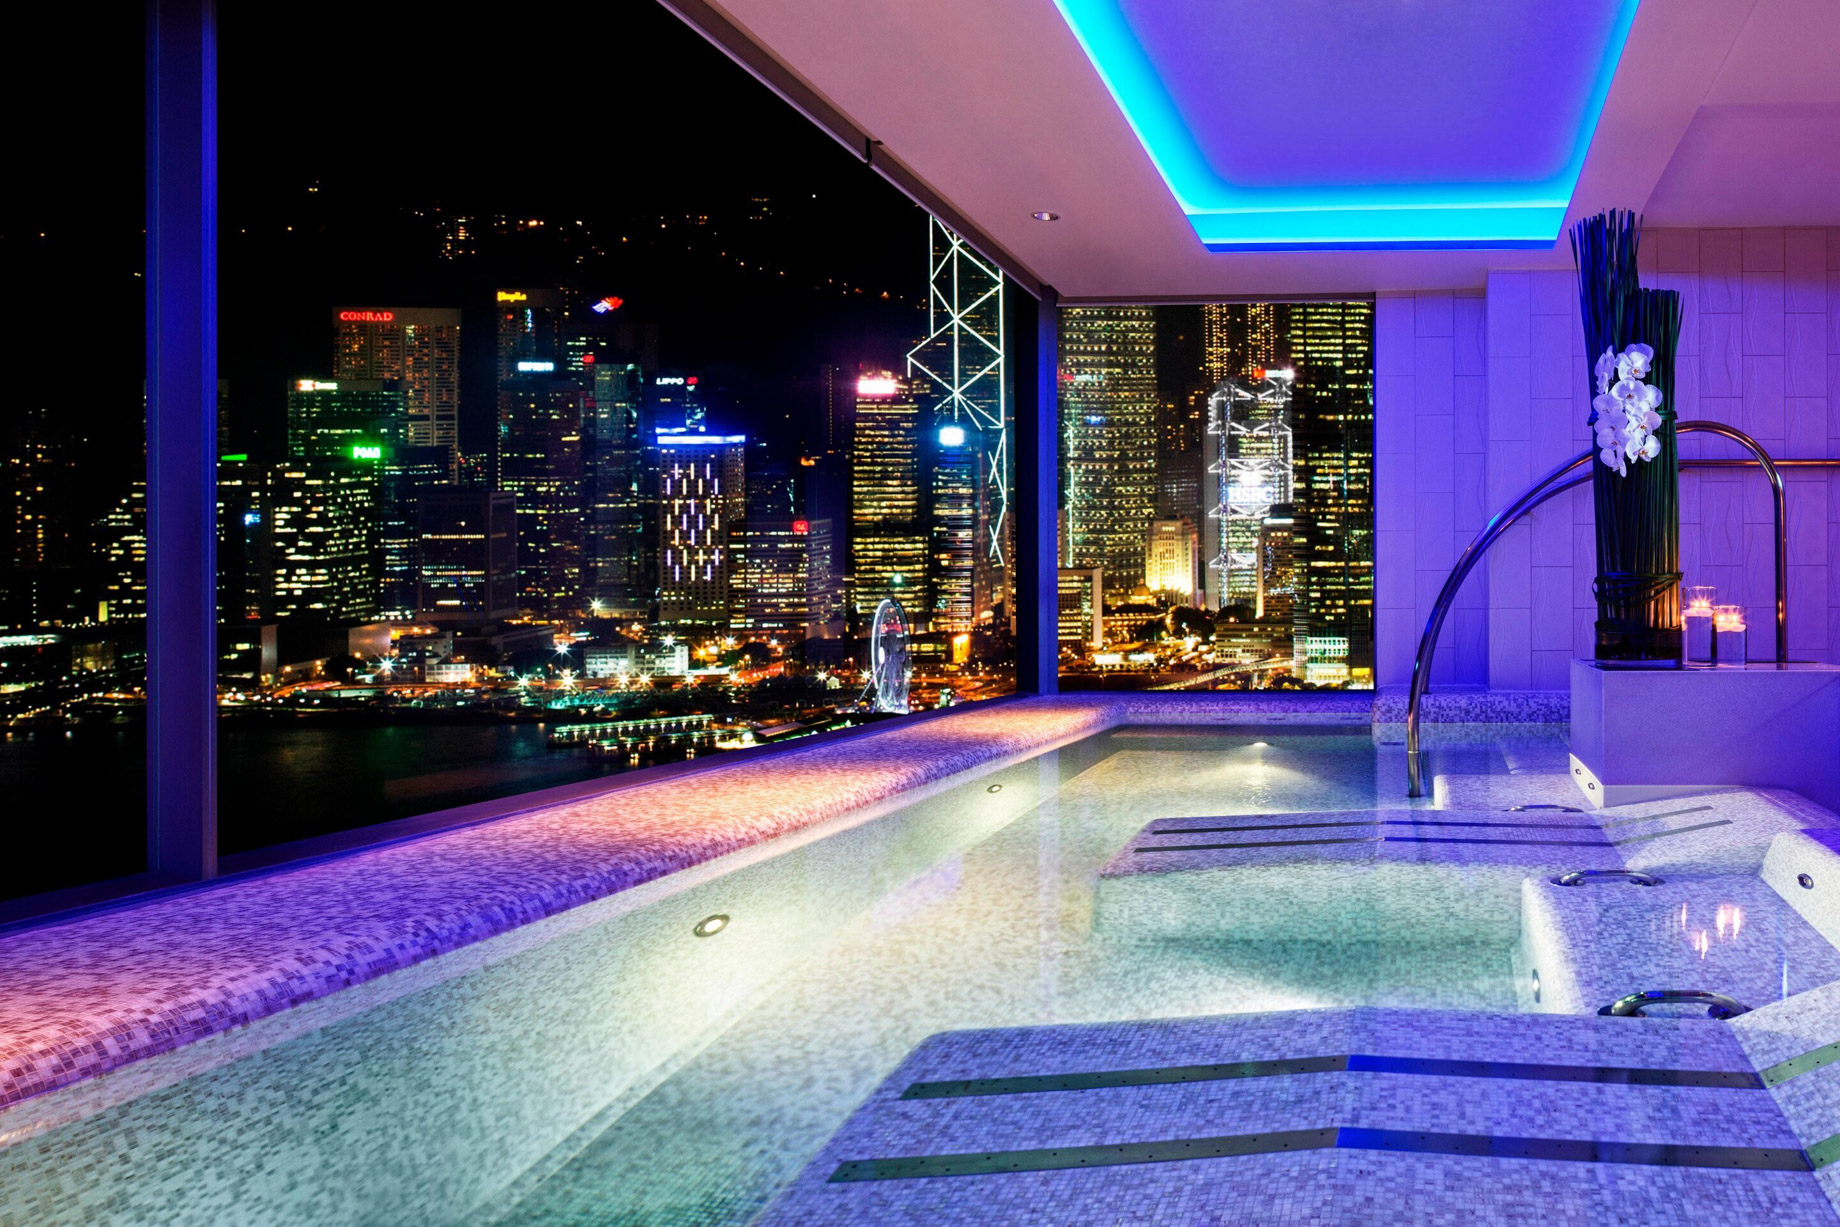 W Hong Kong Hotel – Hong Kong – Bliss Spa Pool